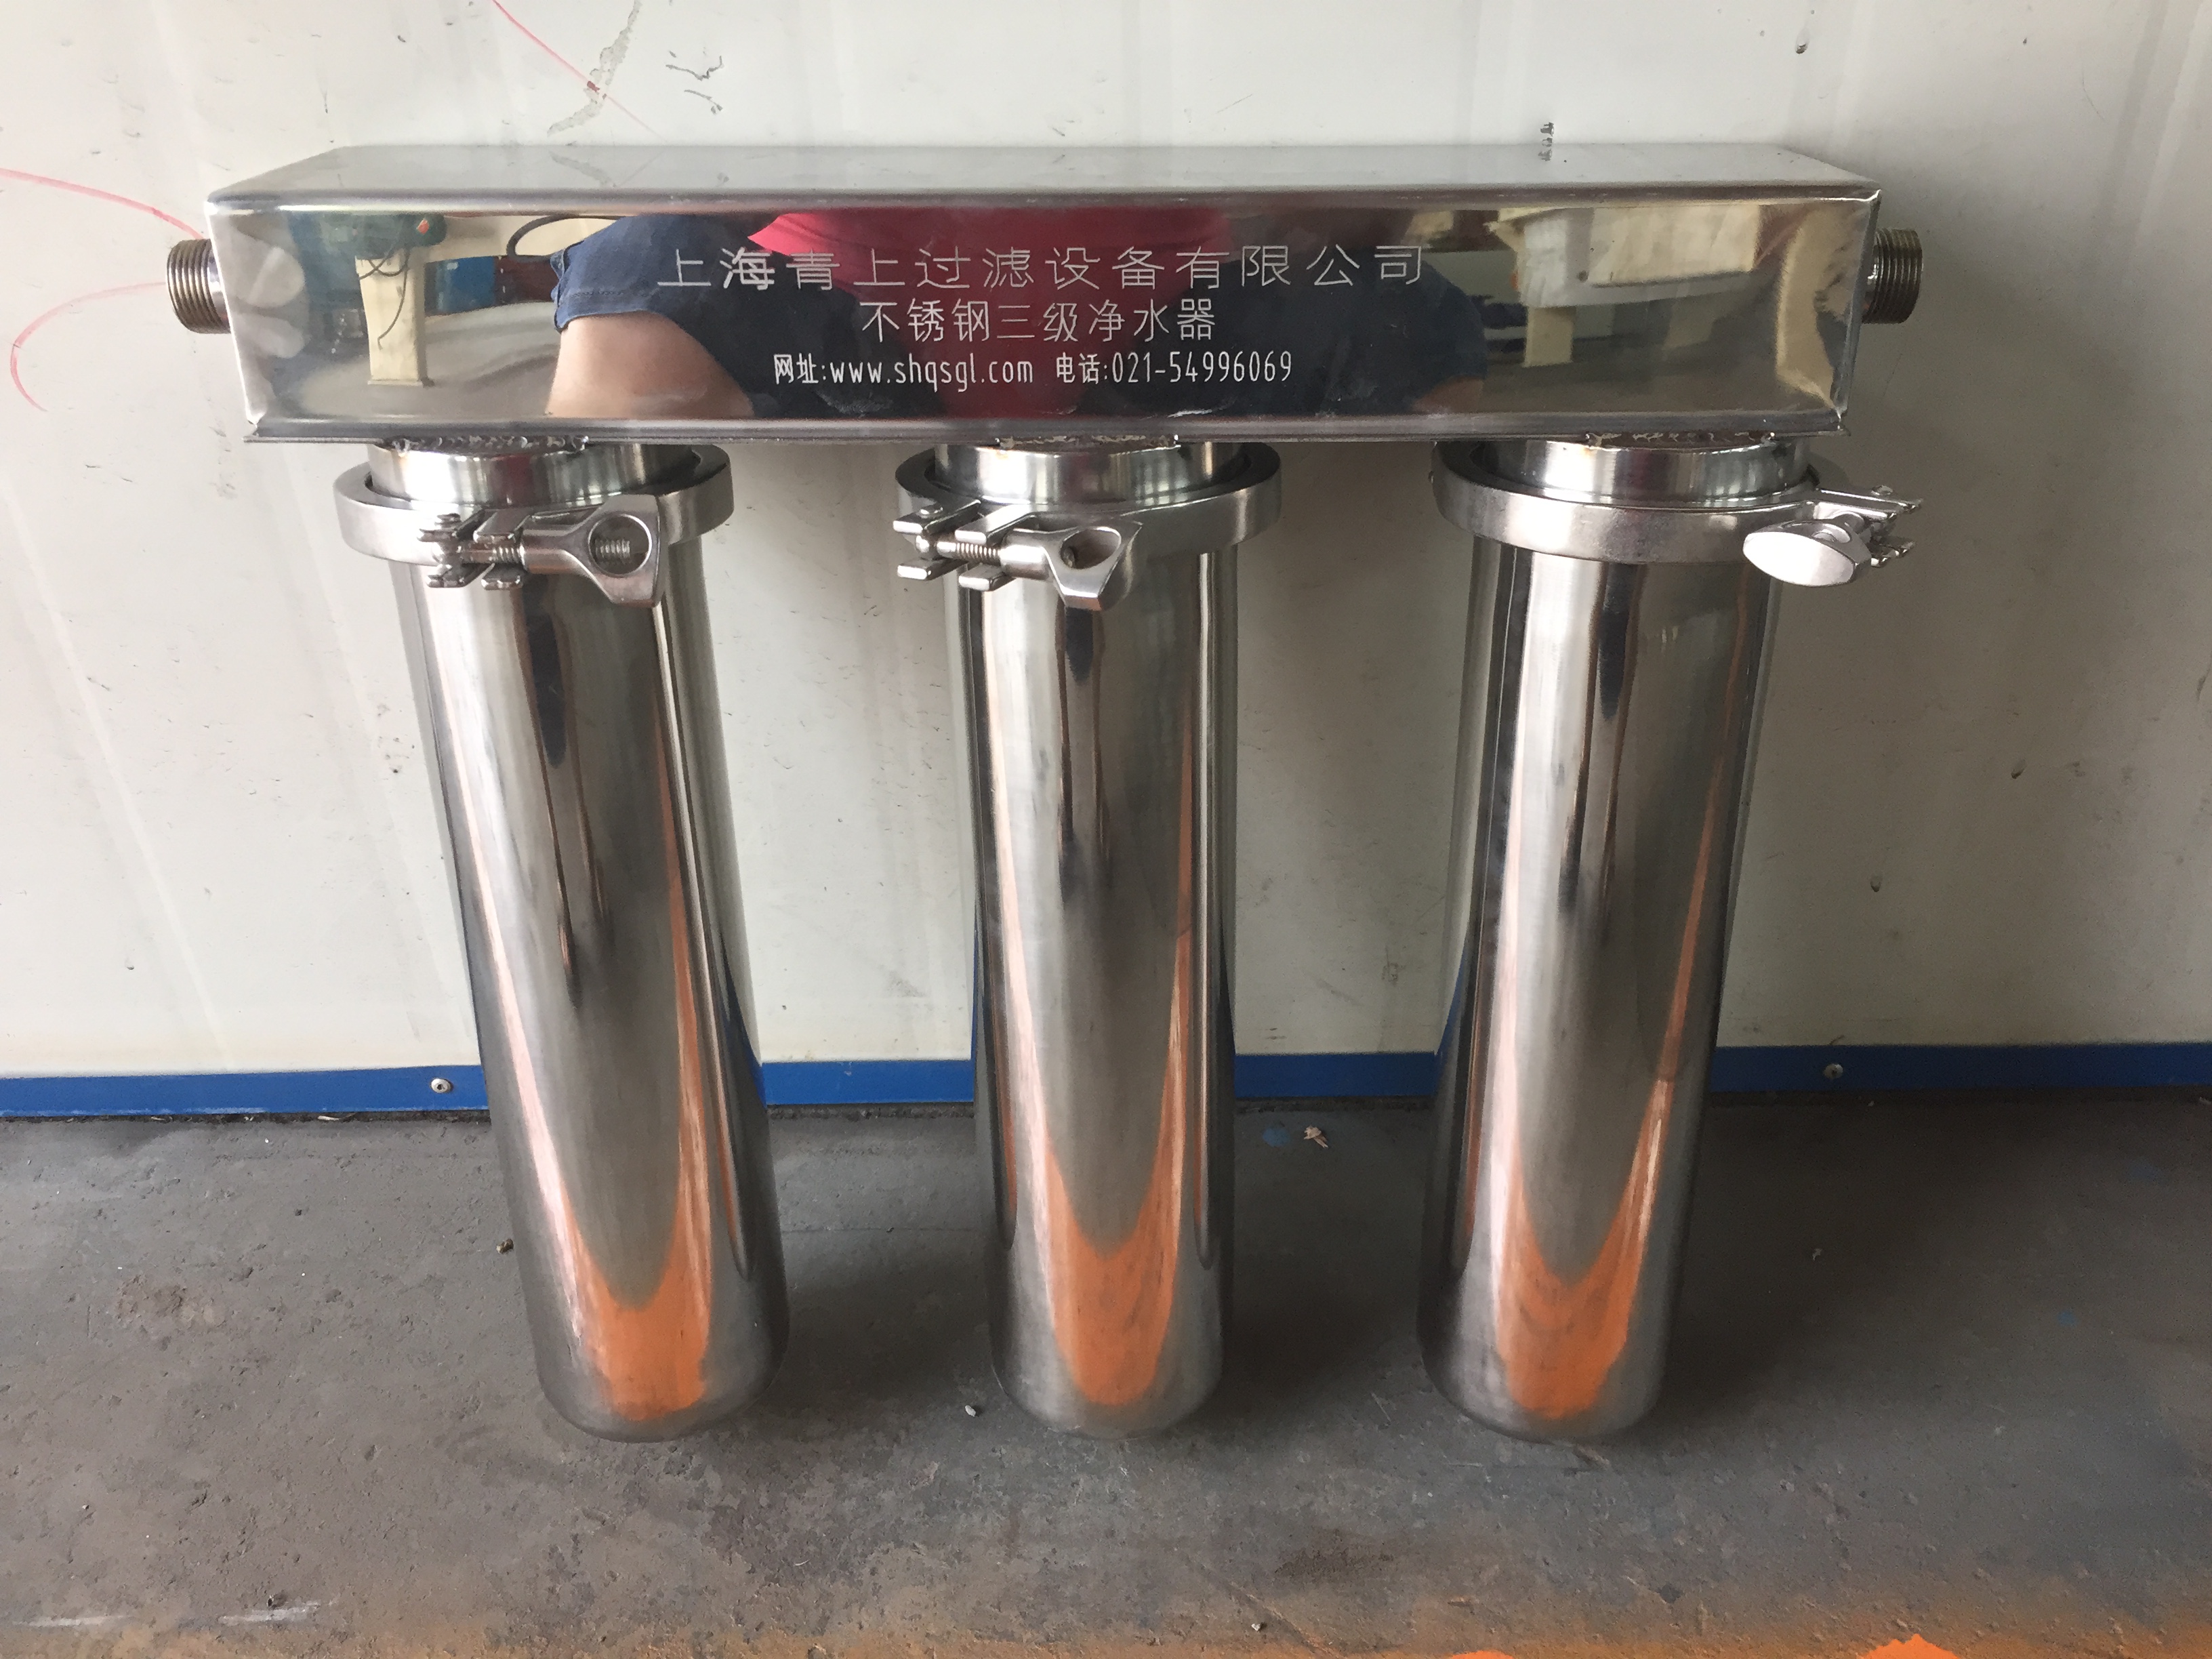 上海青上过滤设备供应家用自来水过滤器厂家批发、直销图片